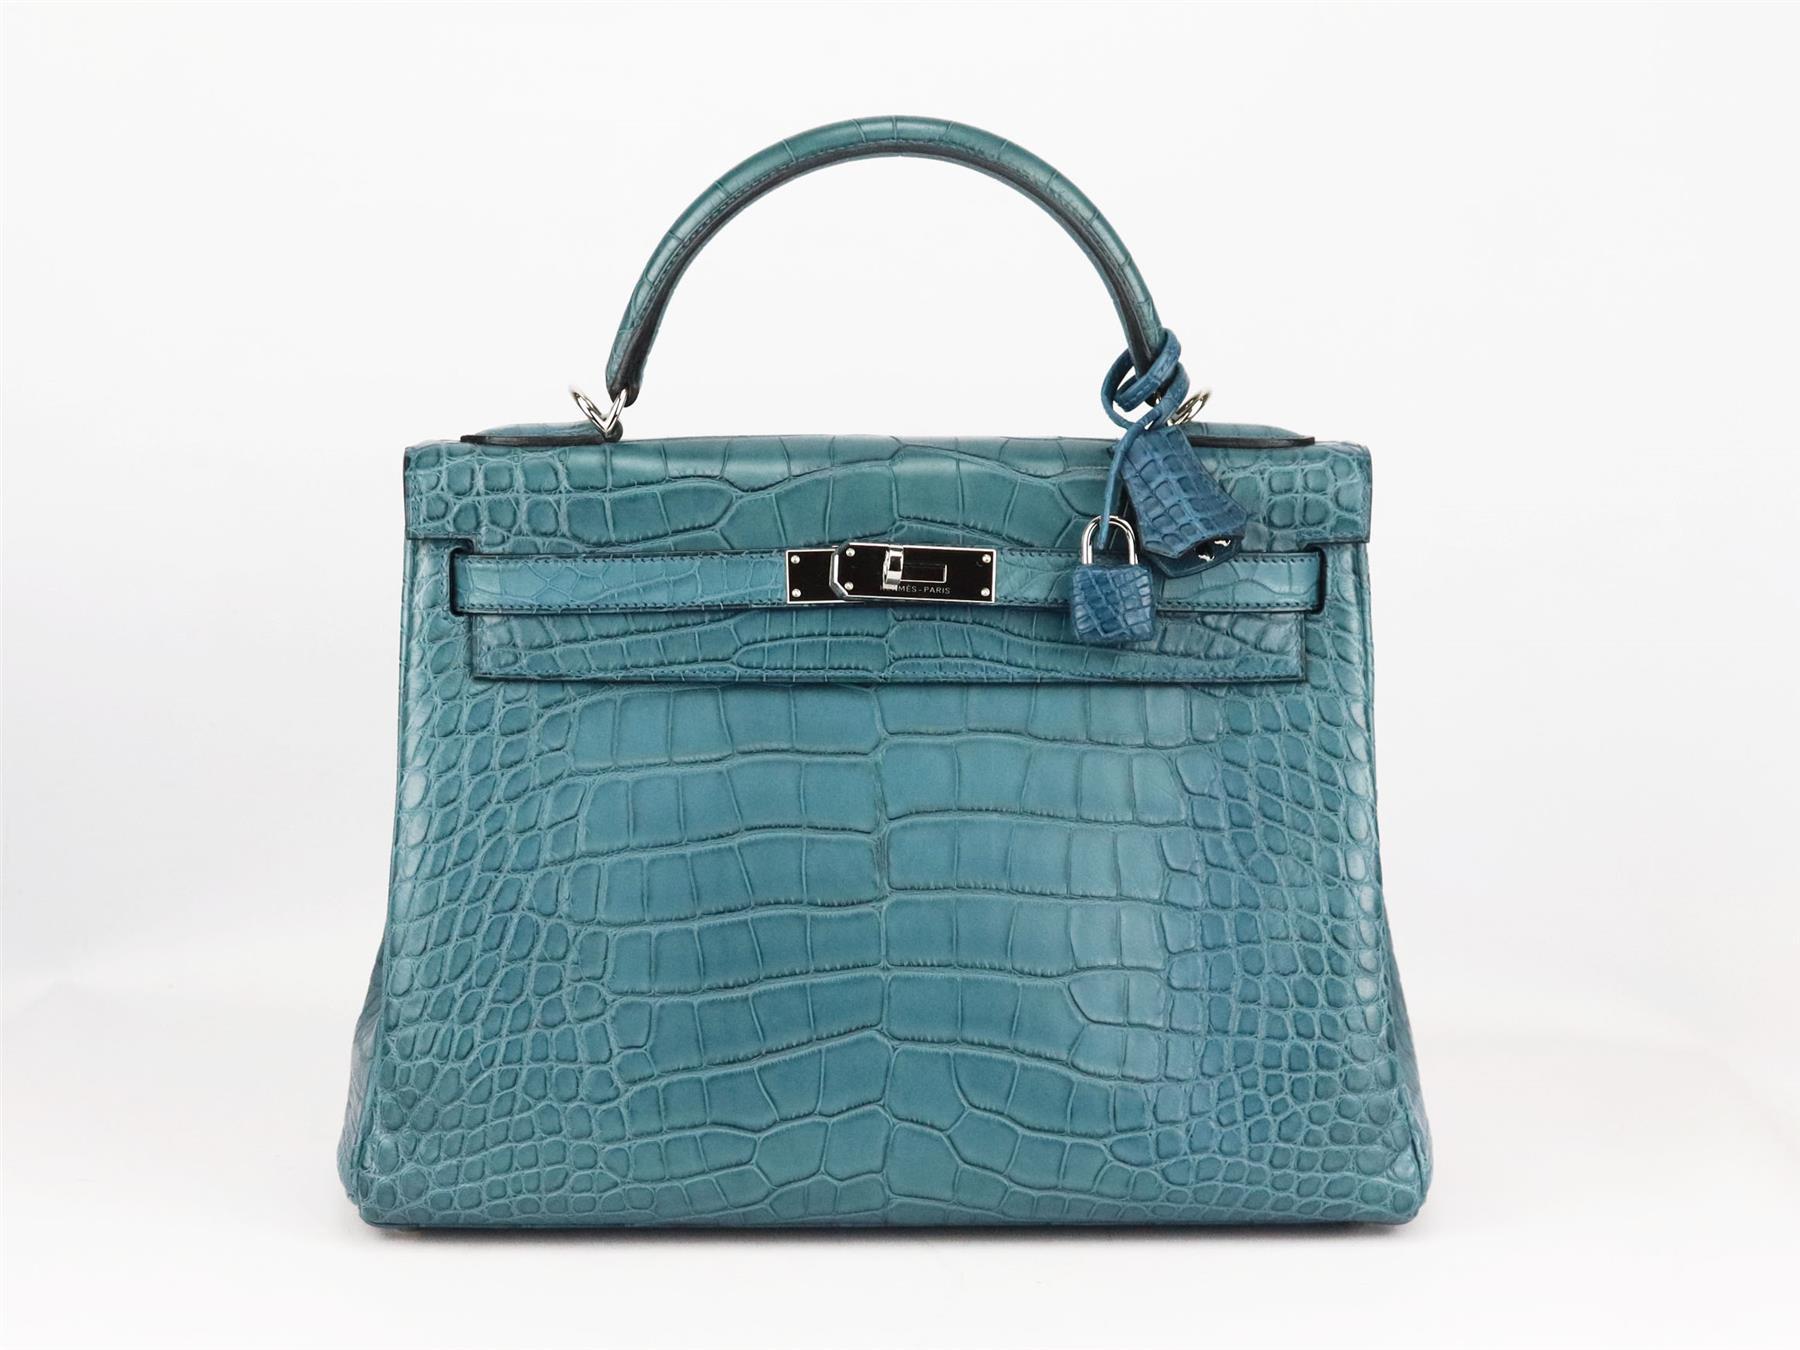 <ul>
<li>Fabriqué en France, ce magnifique sac à main 2015 Hermès 'Kelly' 30cm a été réalisé en cuir Mississippiensis Alligator mat texturé à l'extérieur en 'bleu' et intérieur en cuir assorti, cette pièce est décorée d'une quincaillerie en